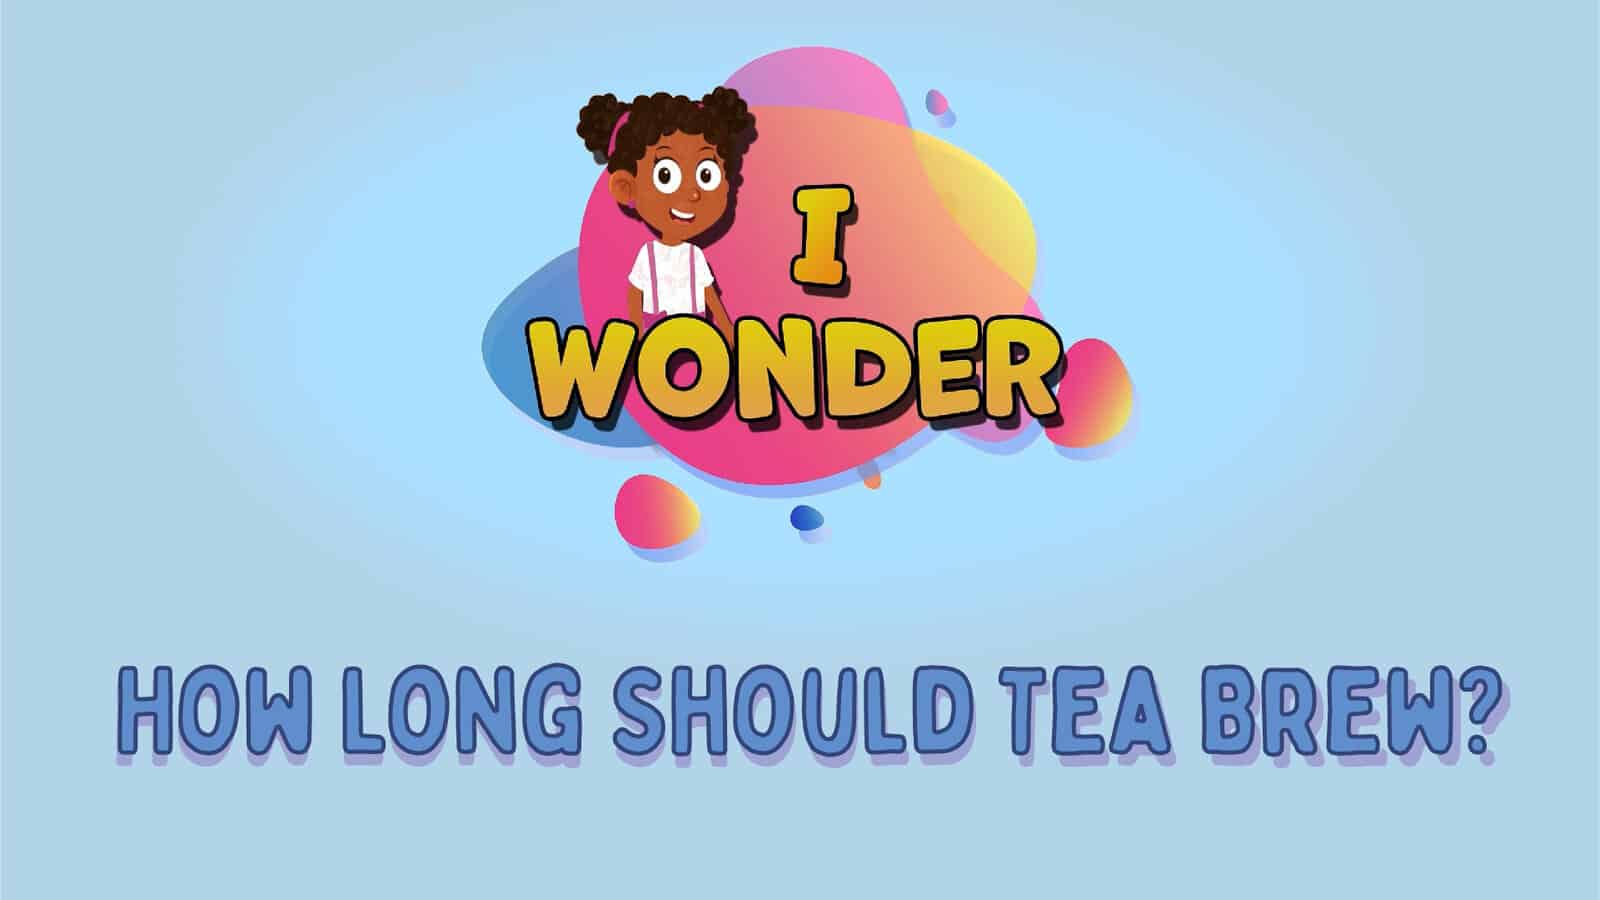 Long Should Tea Brew LearningMole